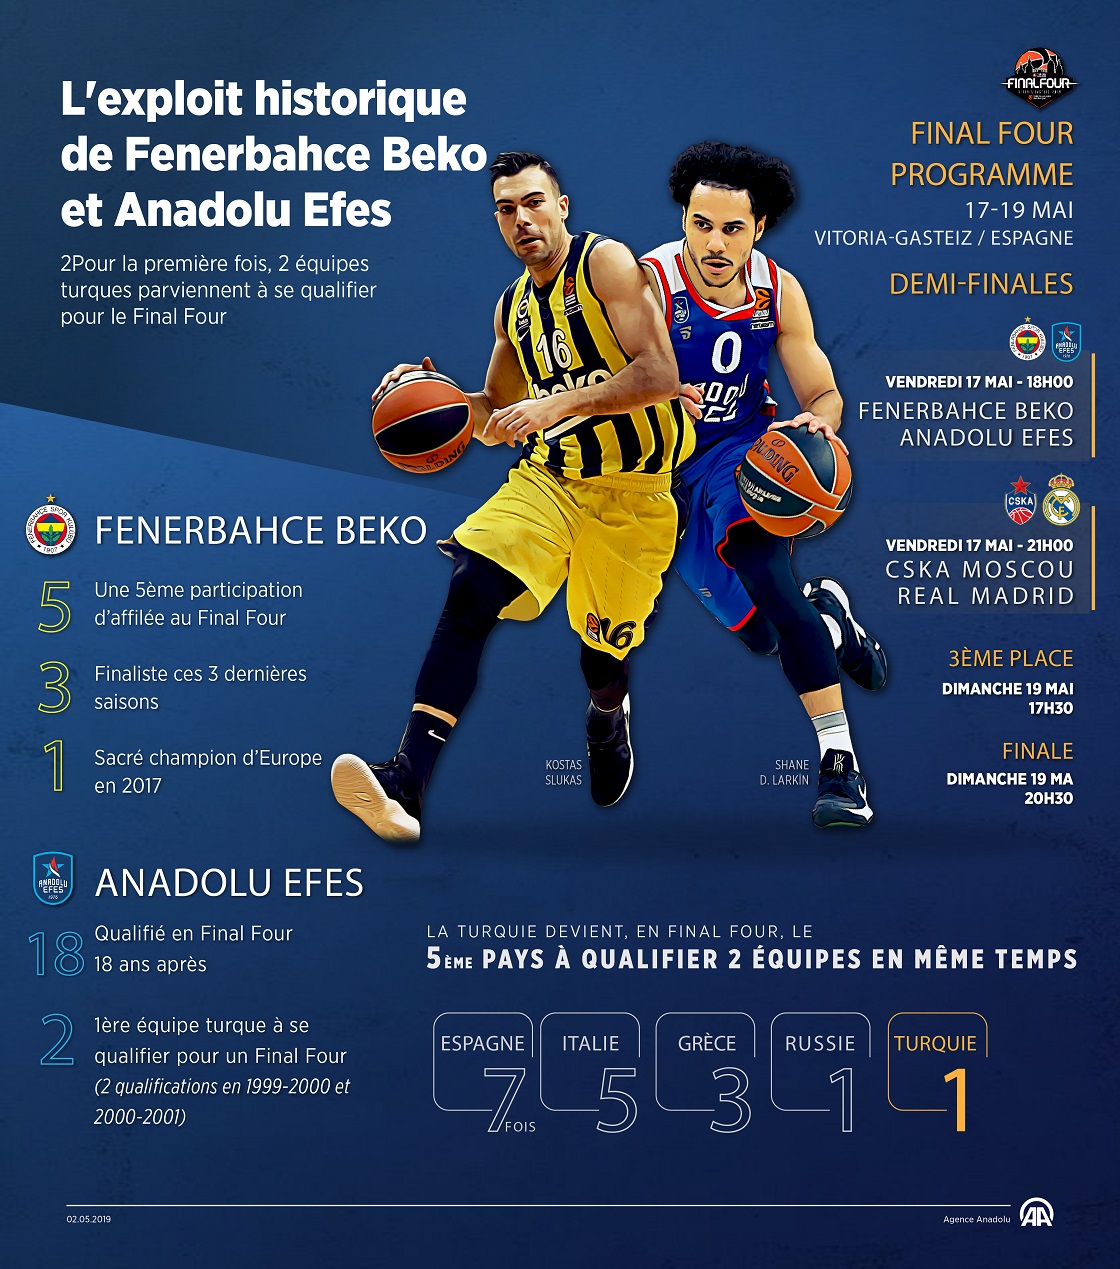  Basket: L'exploit historique de Fenerbahce Beko et Anadolu Efes 